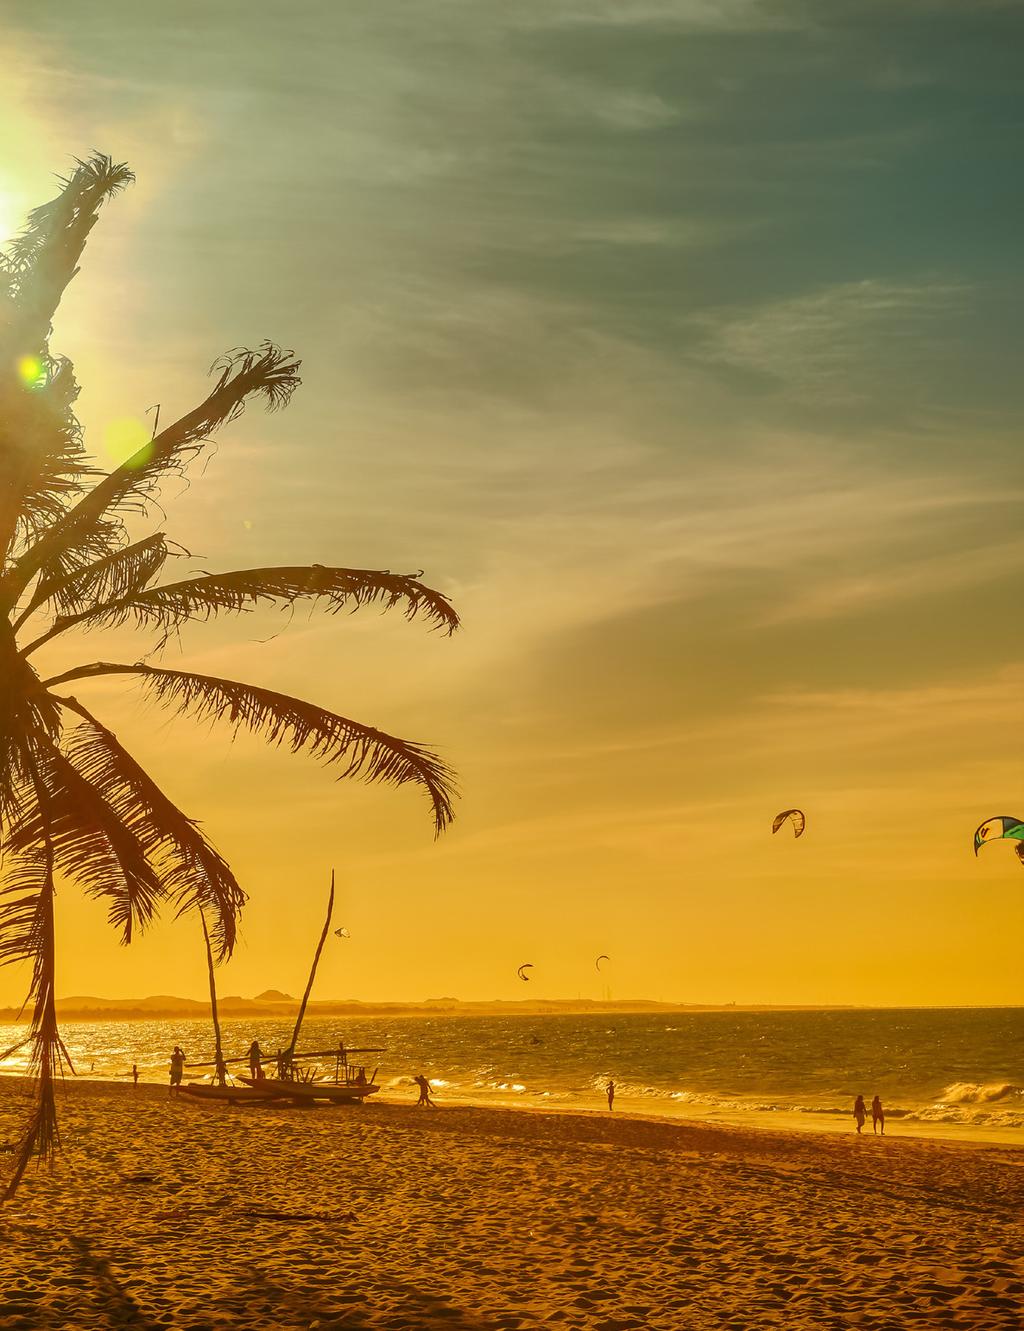 Ceará Comece 2018 do jeito que você merece: de frente para o mar cearense. FORTALEZA CE 3 NOITES Oasis Atlântico Fortaleza city tour + seguro-viagem.